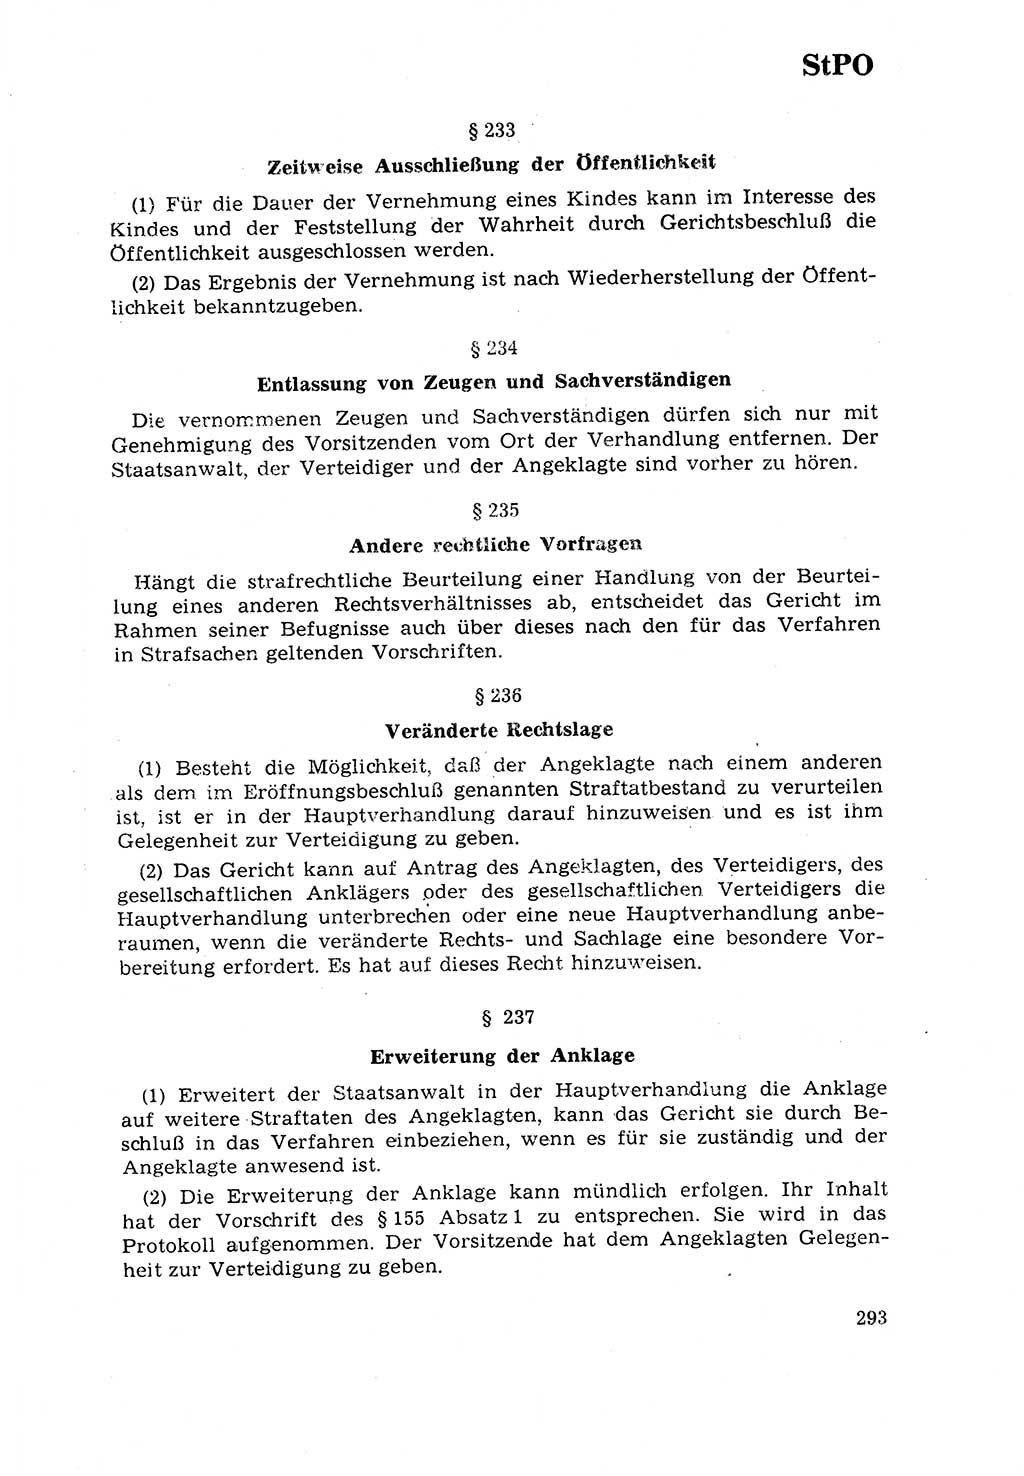 Strafrecht [Deutsche Demokratische Republik (DDR)] 1968, Seite 293 (Strafr. DDR 1968, S. 293)